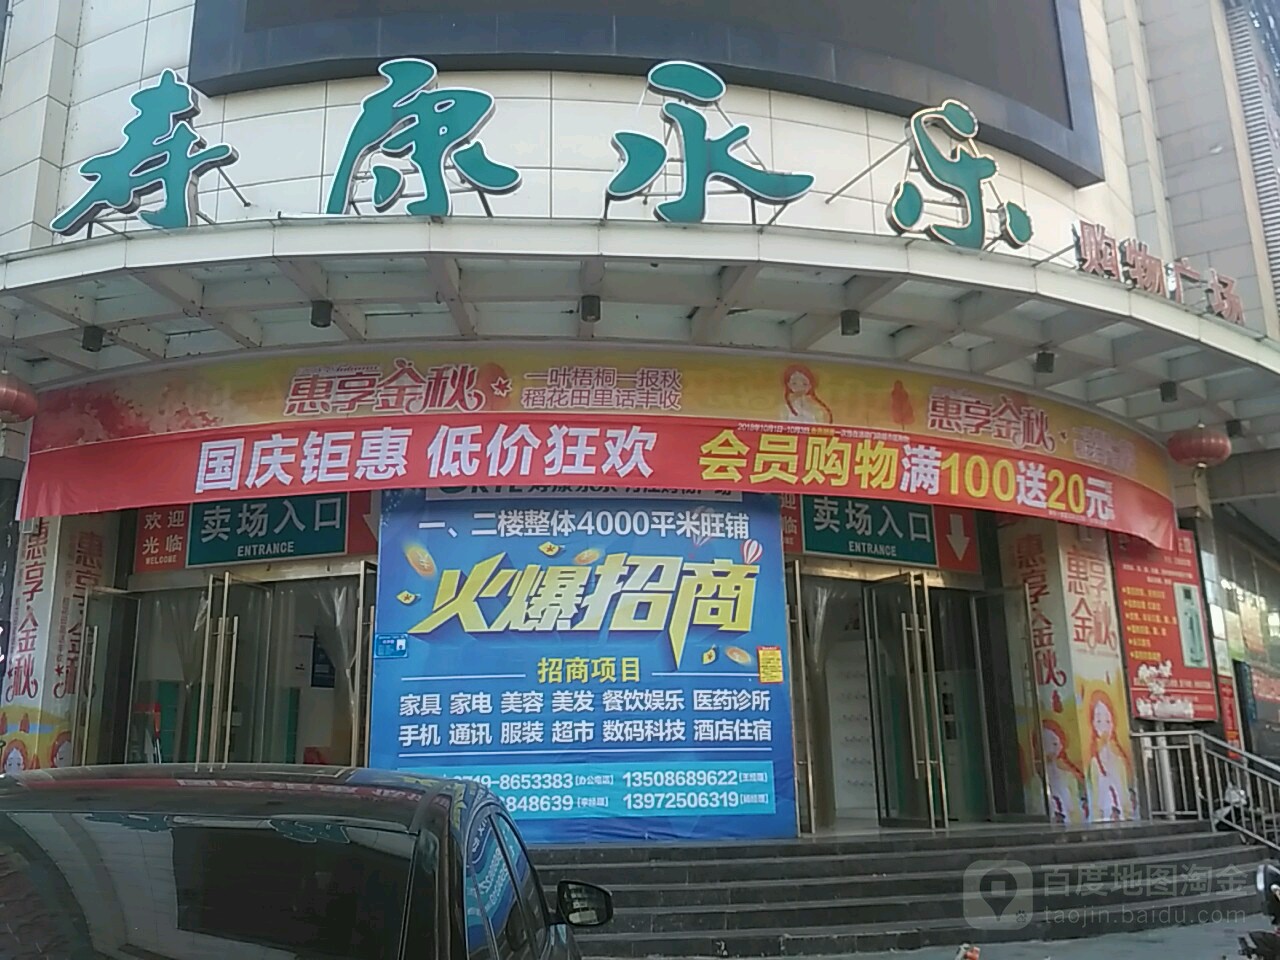 寿康永乐购物广场地址,电话,简介(十堰)